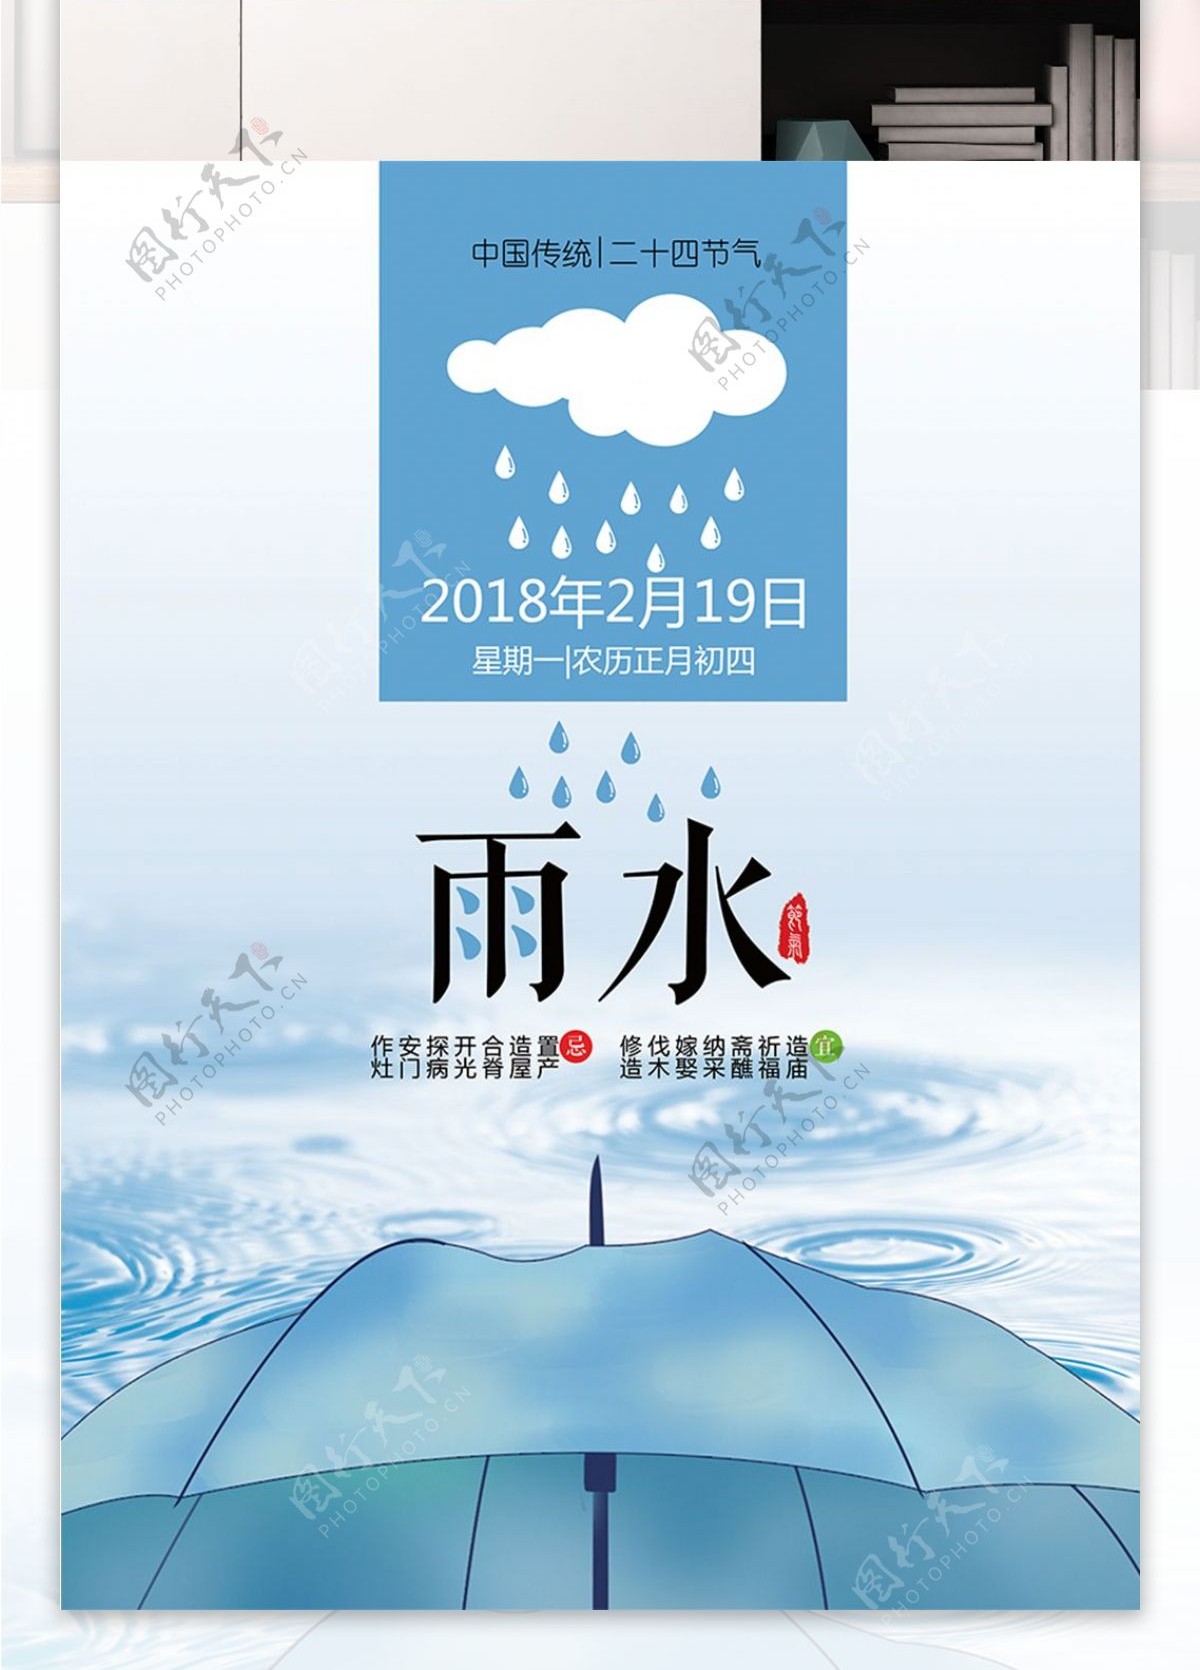 雨水蓝色伞雨滴小清新宣传日签PSD源文件